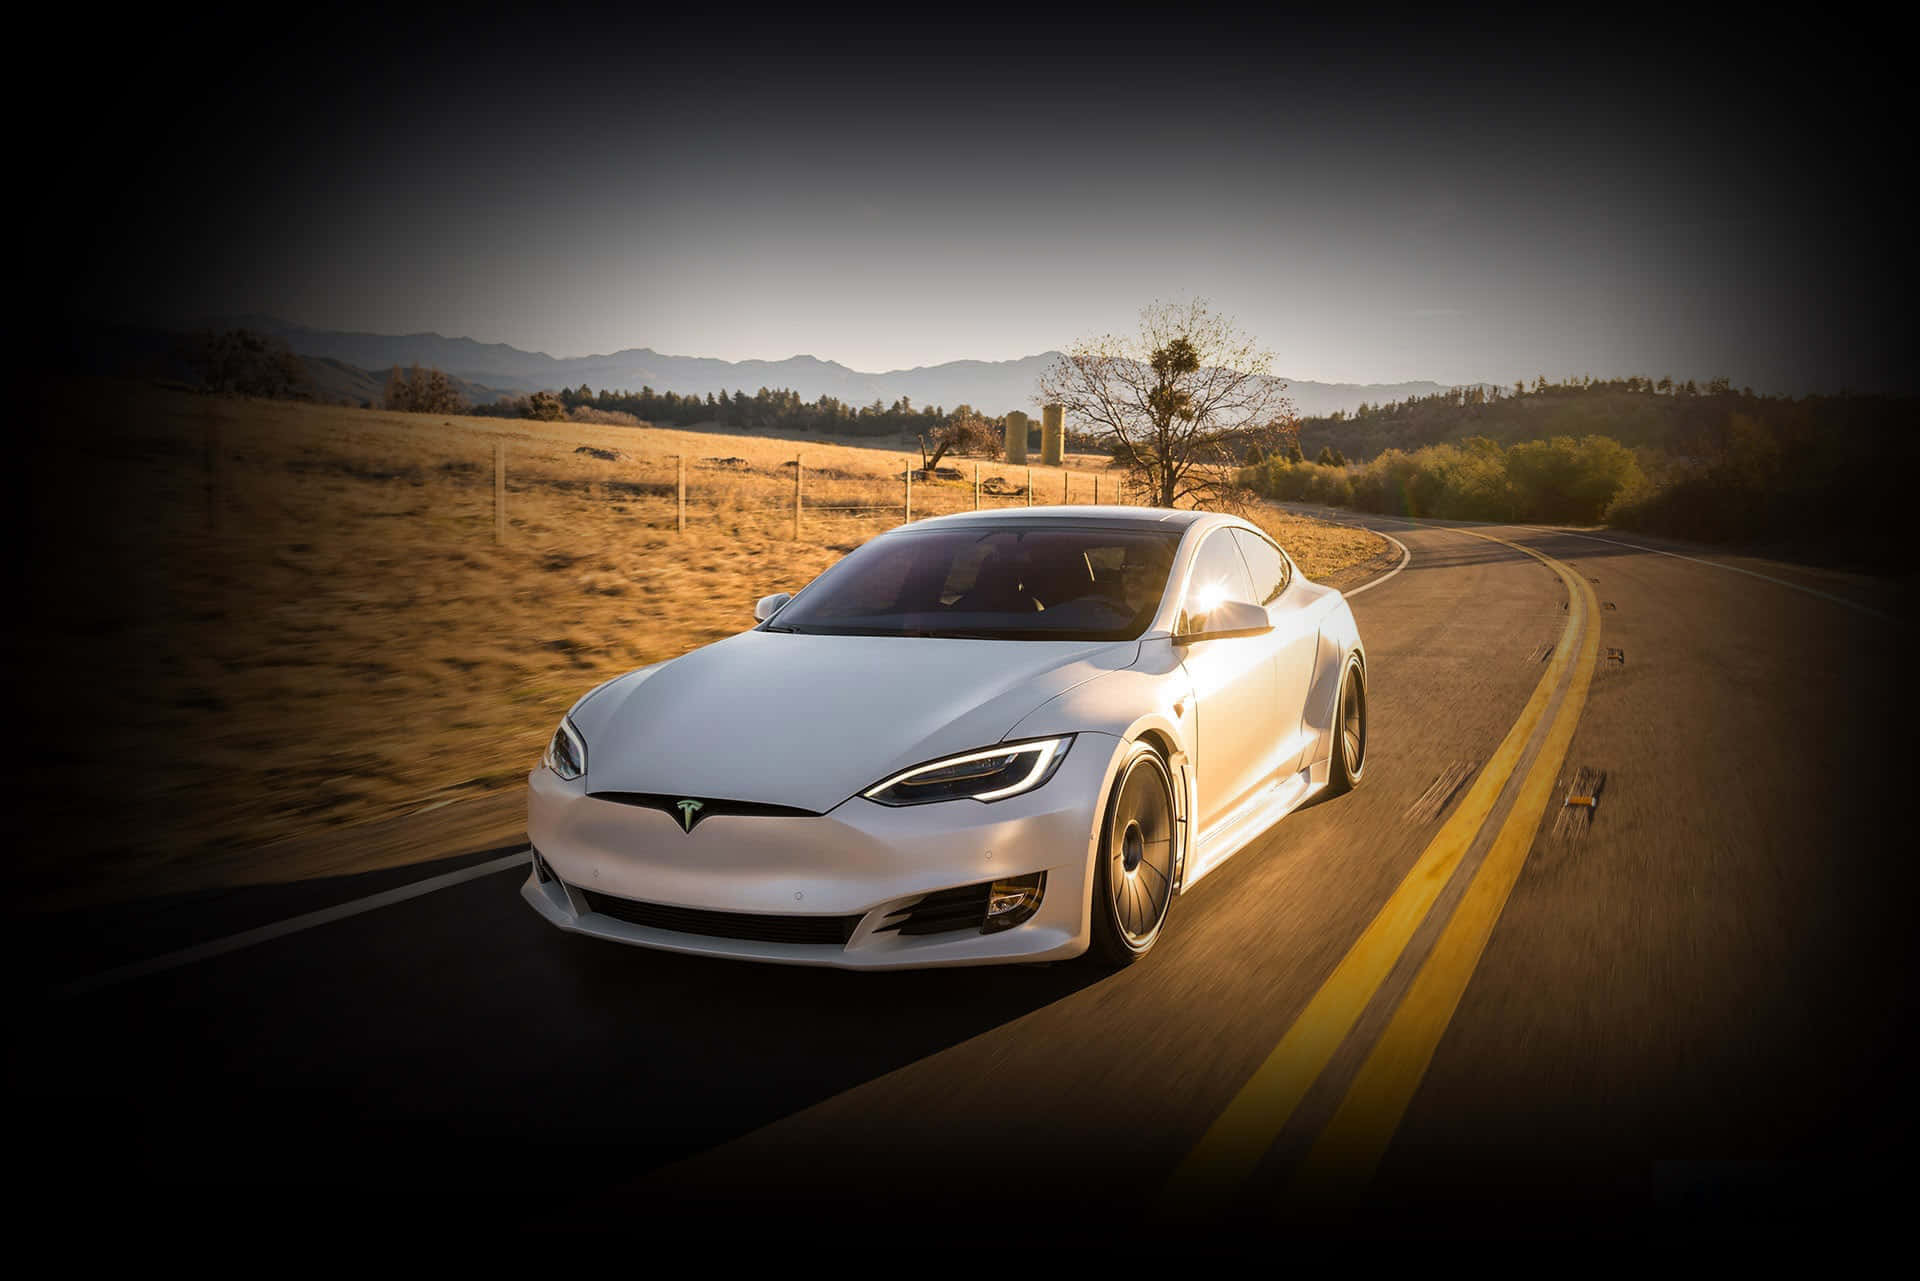 Leauto Elettriche Di Tesla Stanno Stabilendo Il Nuovo Standard Per Il Trasporto Ecologico.